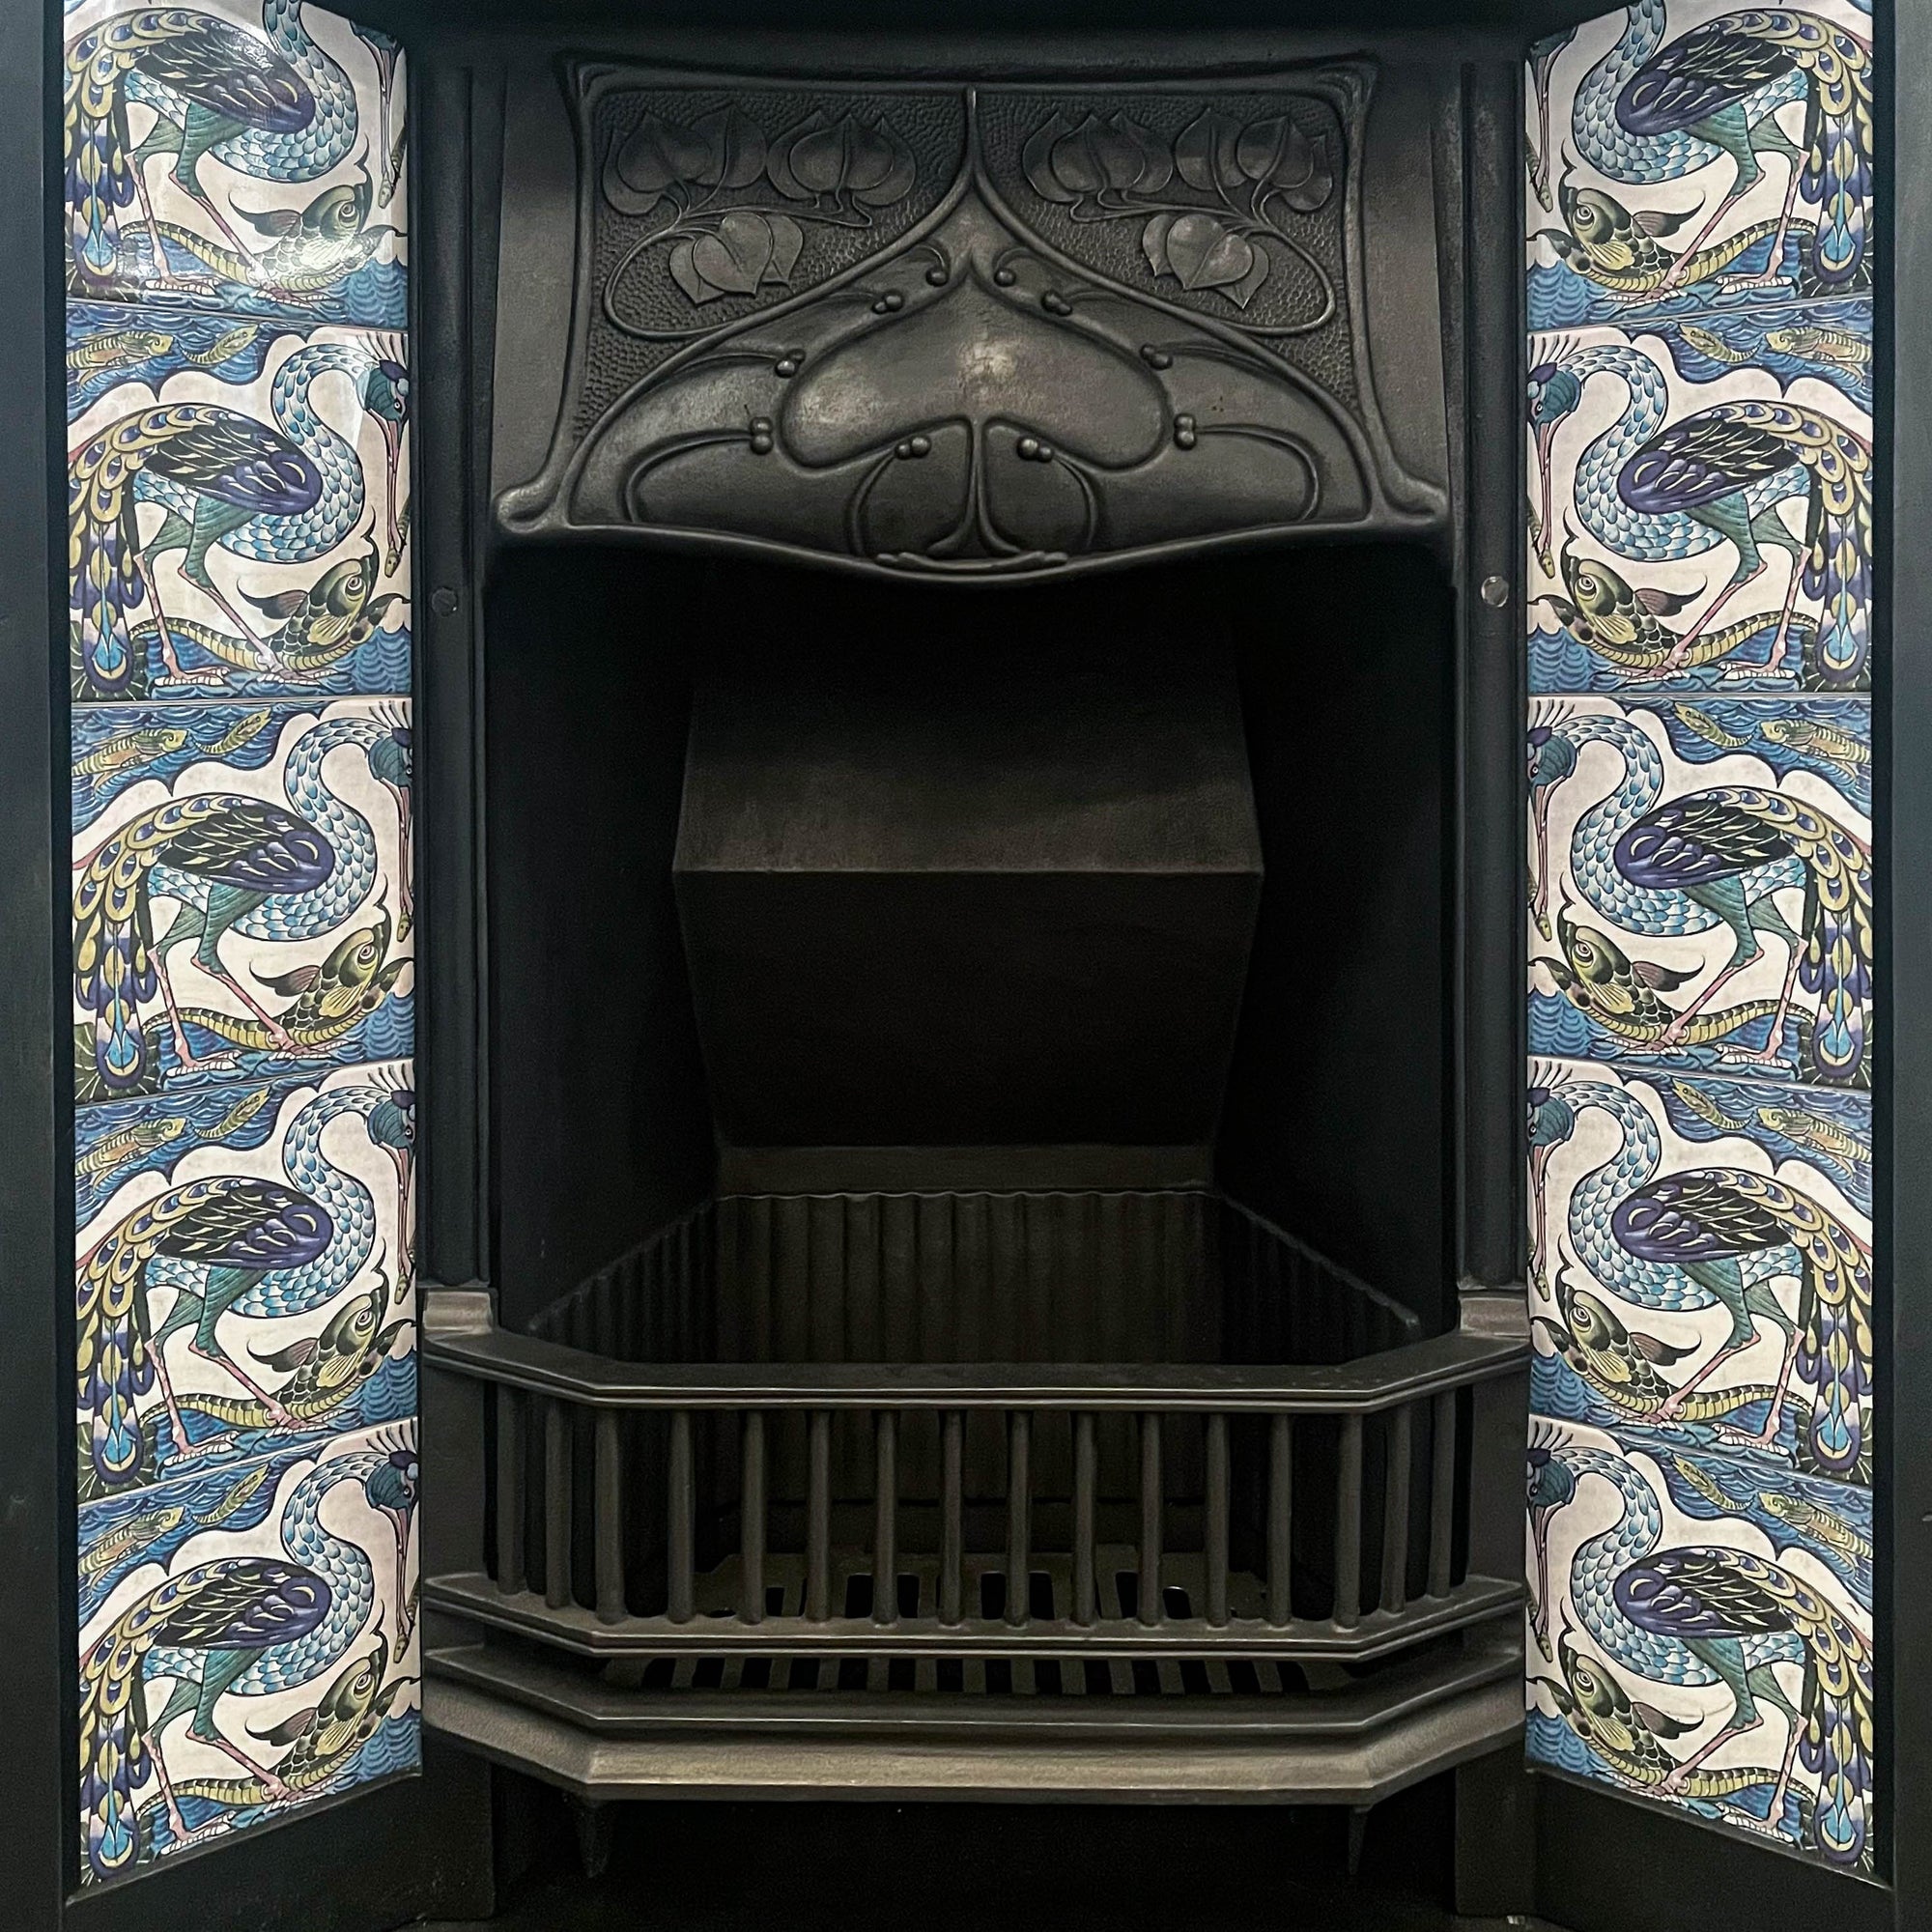 Antique Art Nouveau Tiled Cast Iron Combination Fireplace | The Architectural Forum